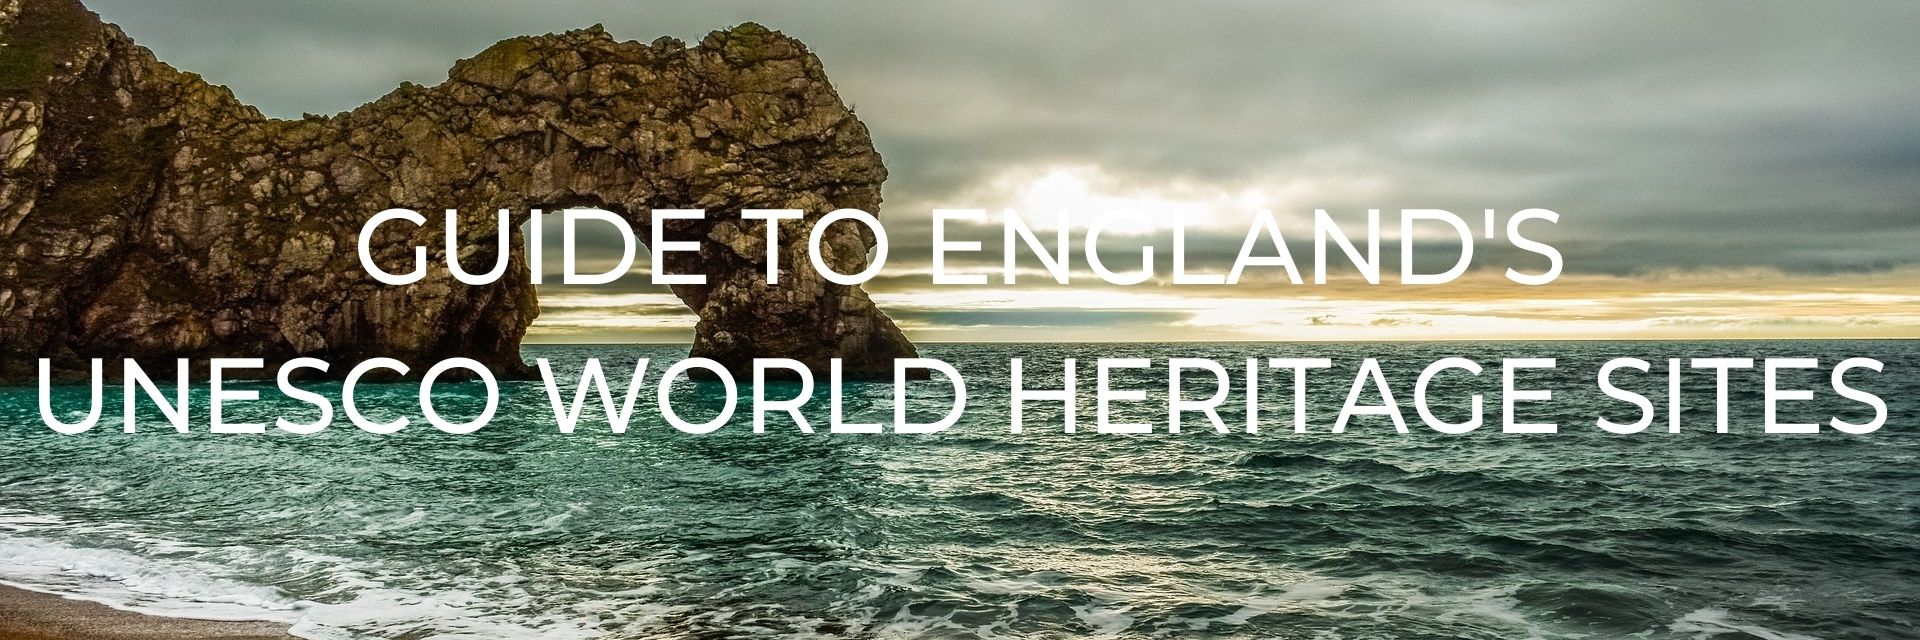 Guide to England's UNESCO World Heritage Sites Desktop Header